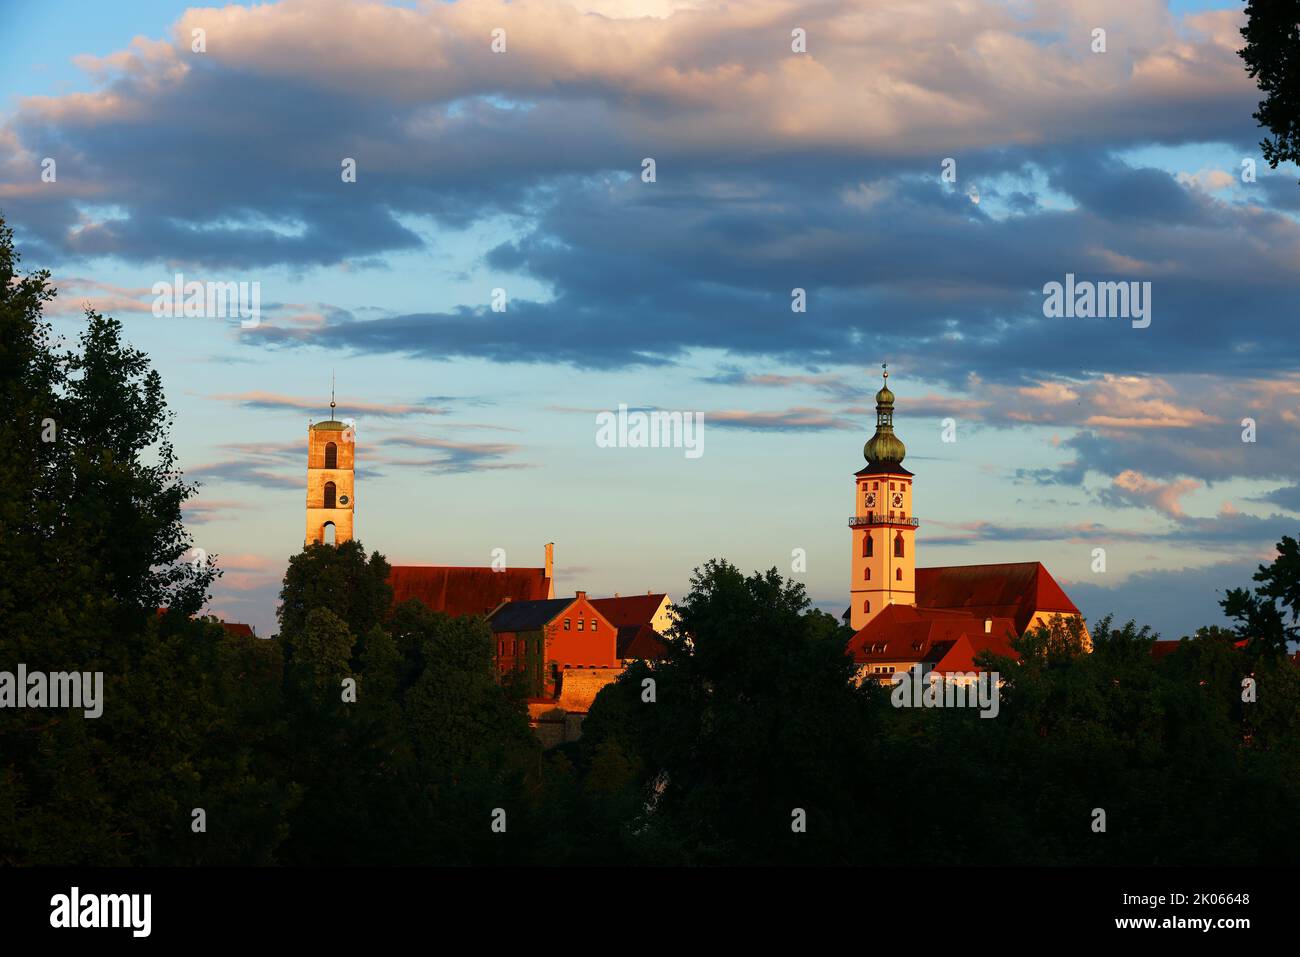 Kirche, Kirchturm in der Altstadt oder Innenstadt mit Schloss und dramatischen Wolken in Sulzbach Rosenberg, Amberg, Oberpfalz, Bayern! Foto de stock